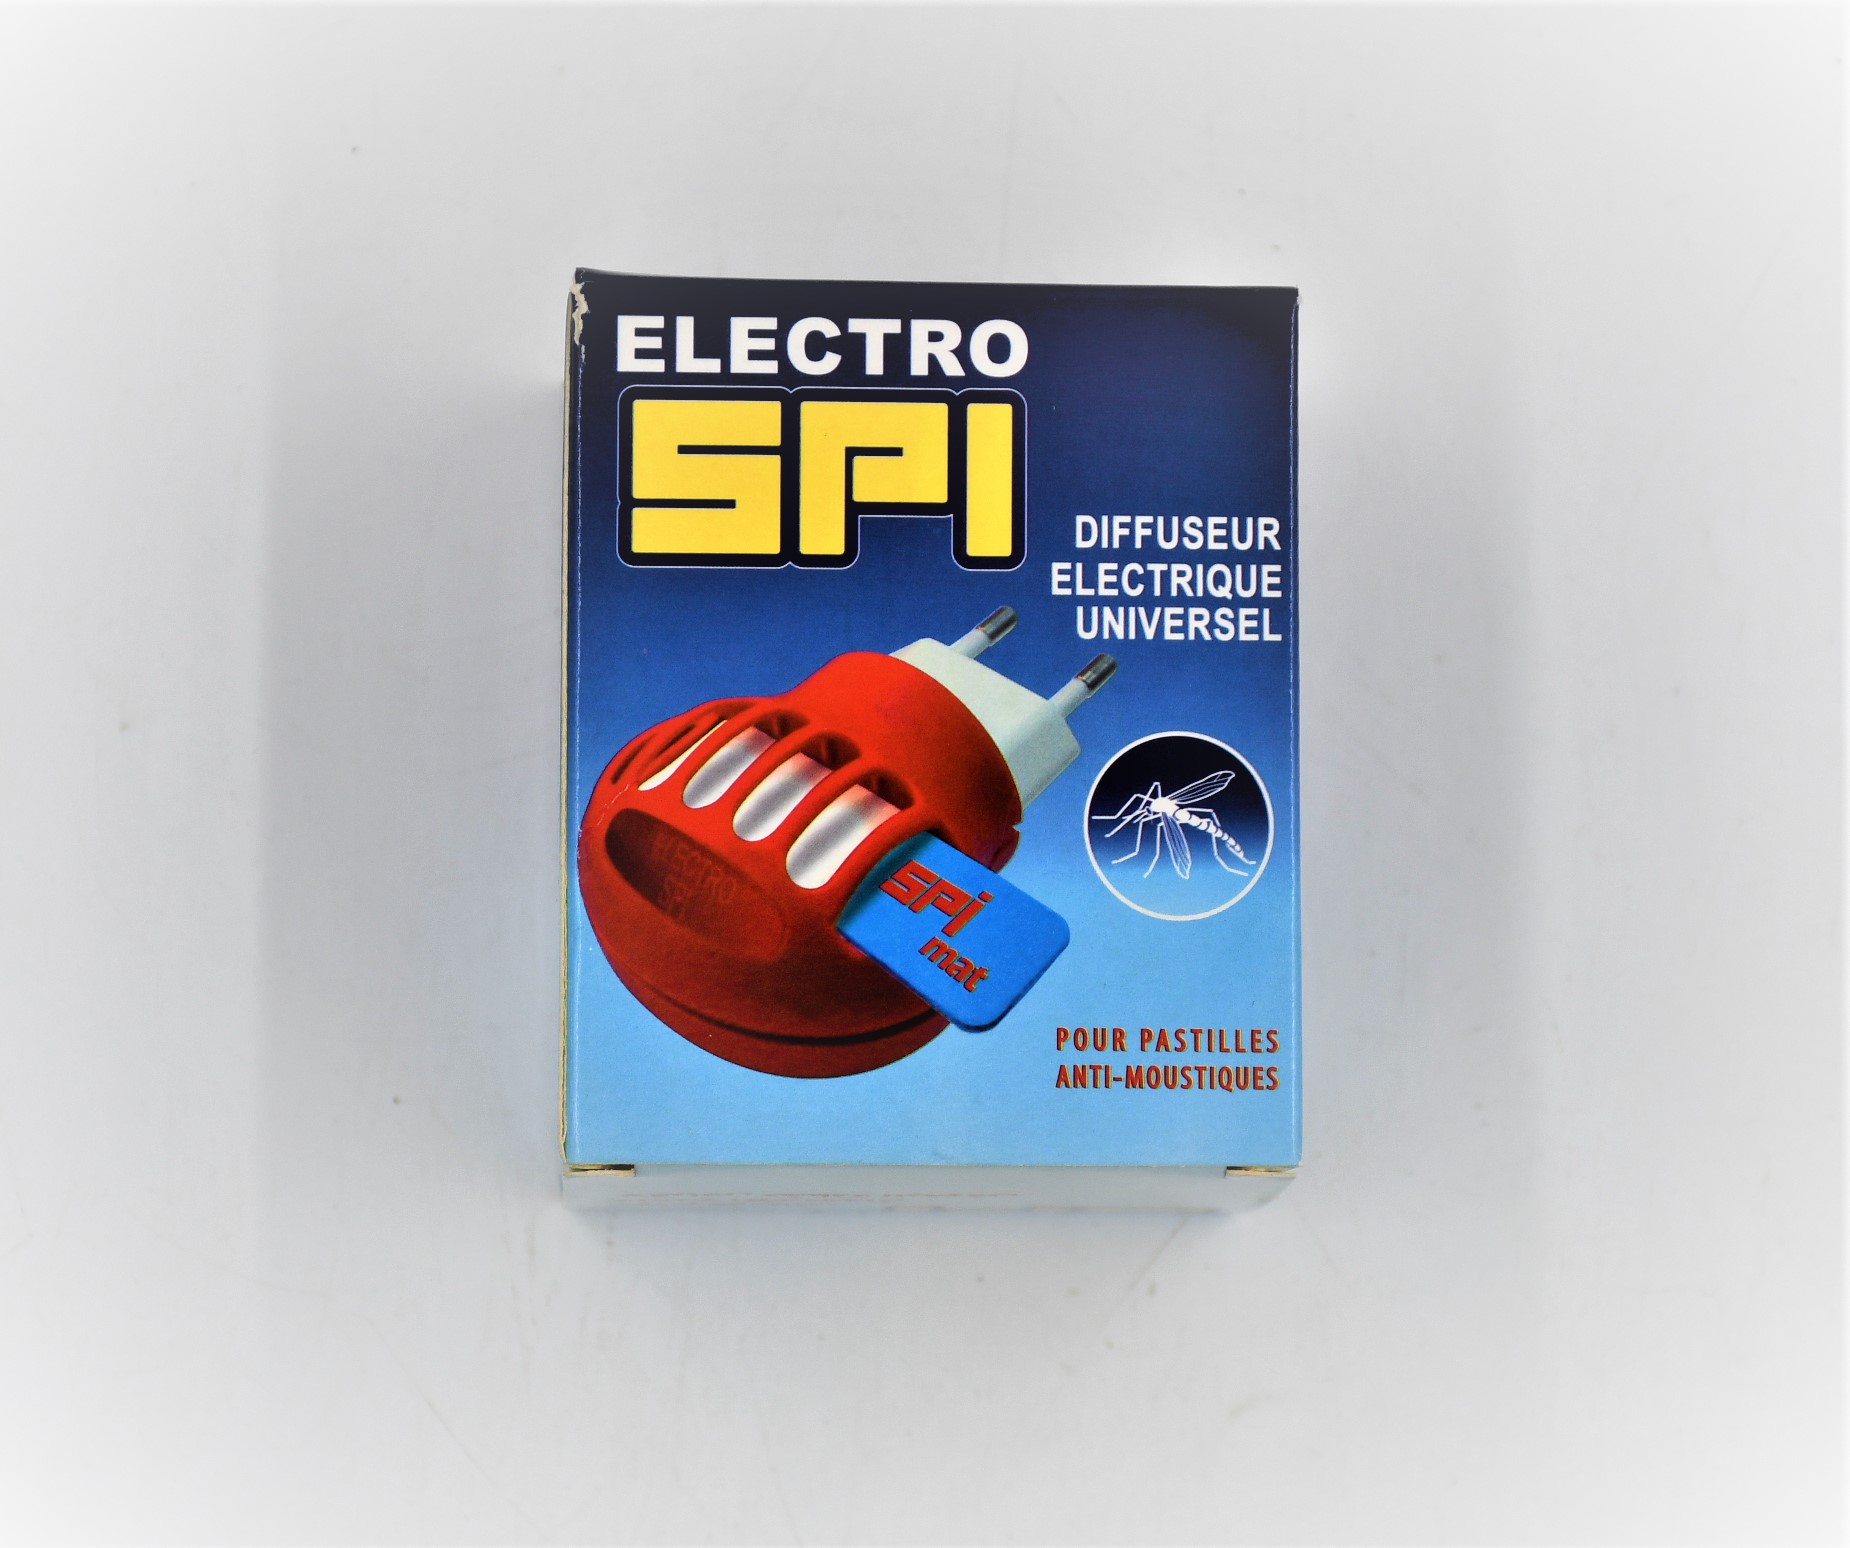 SPI Electro Diffuseur Electrique universel pour pastilles anti moustique